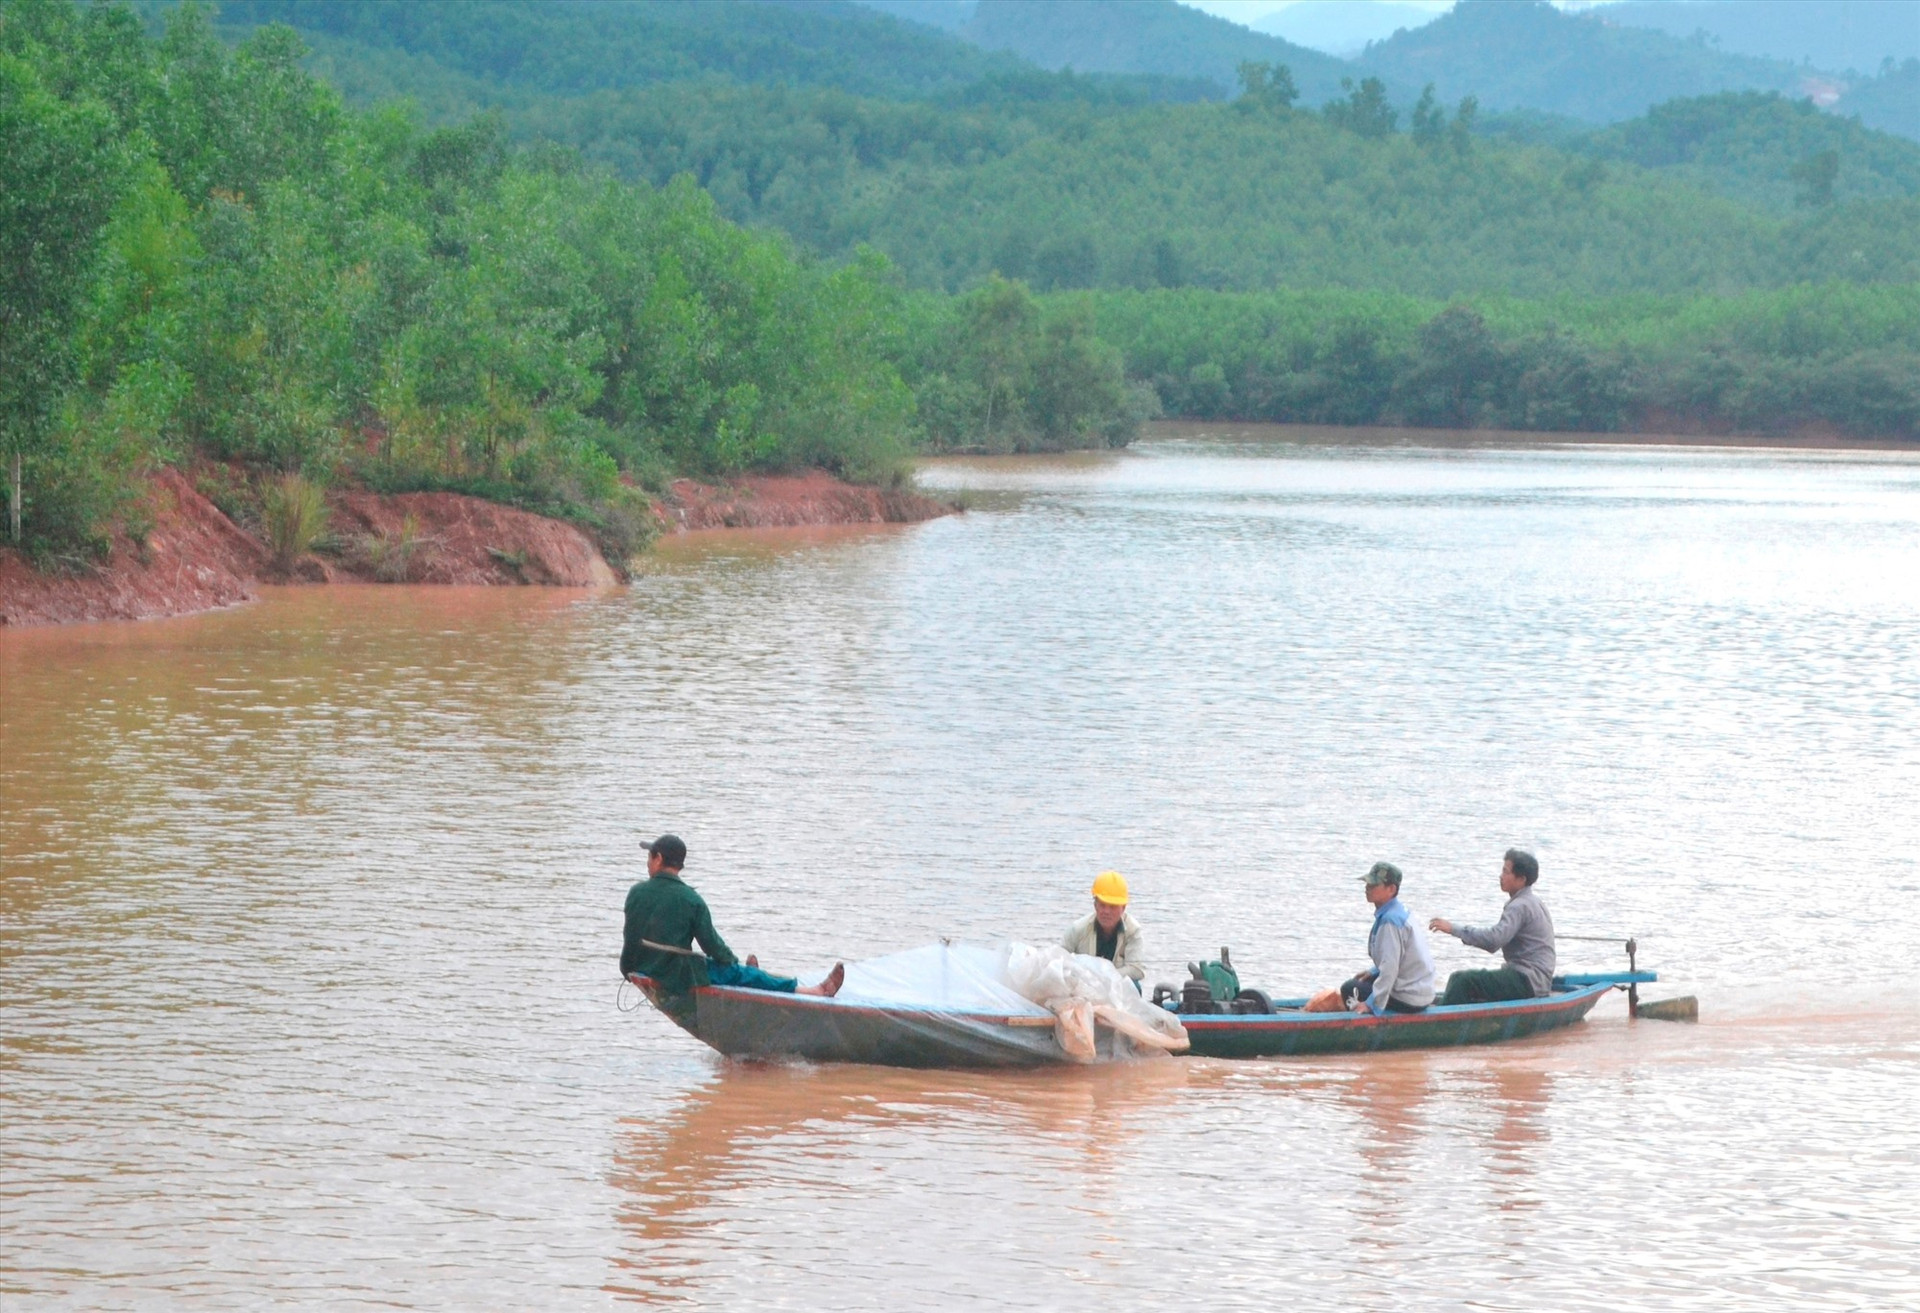 Người dân sử dụng ghe thô sơ đi lại trên lòng hồ Khe Tân (Đại Lộc), không mặc phao cứu sinh. Ảnh: C.T